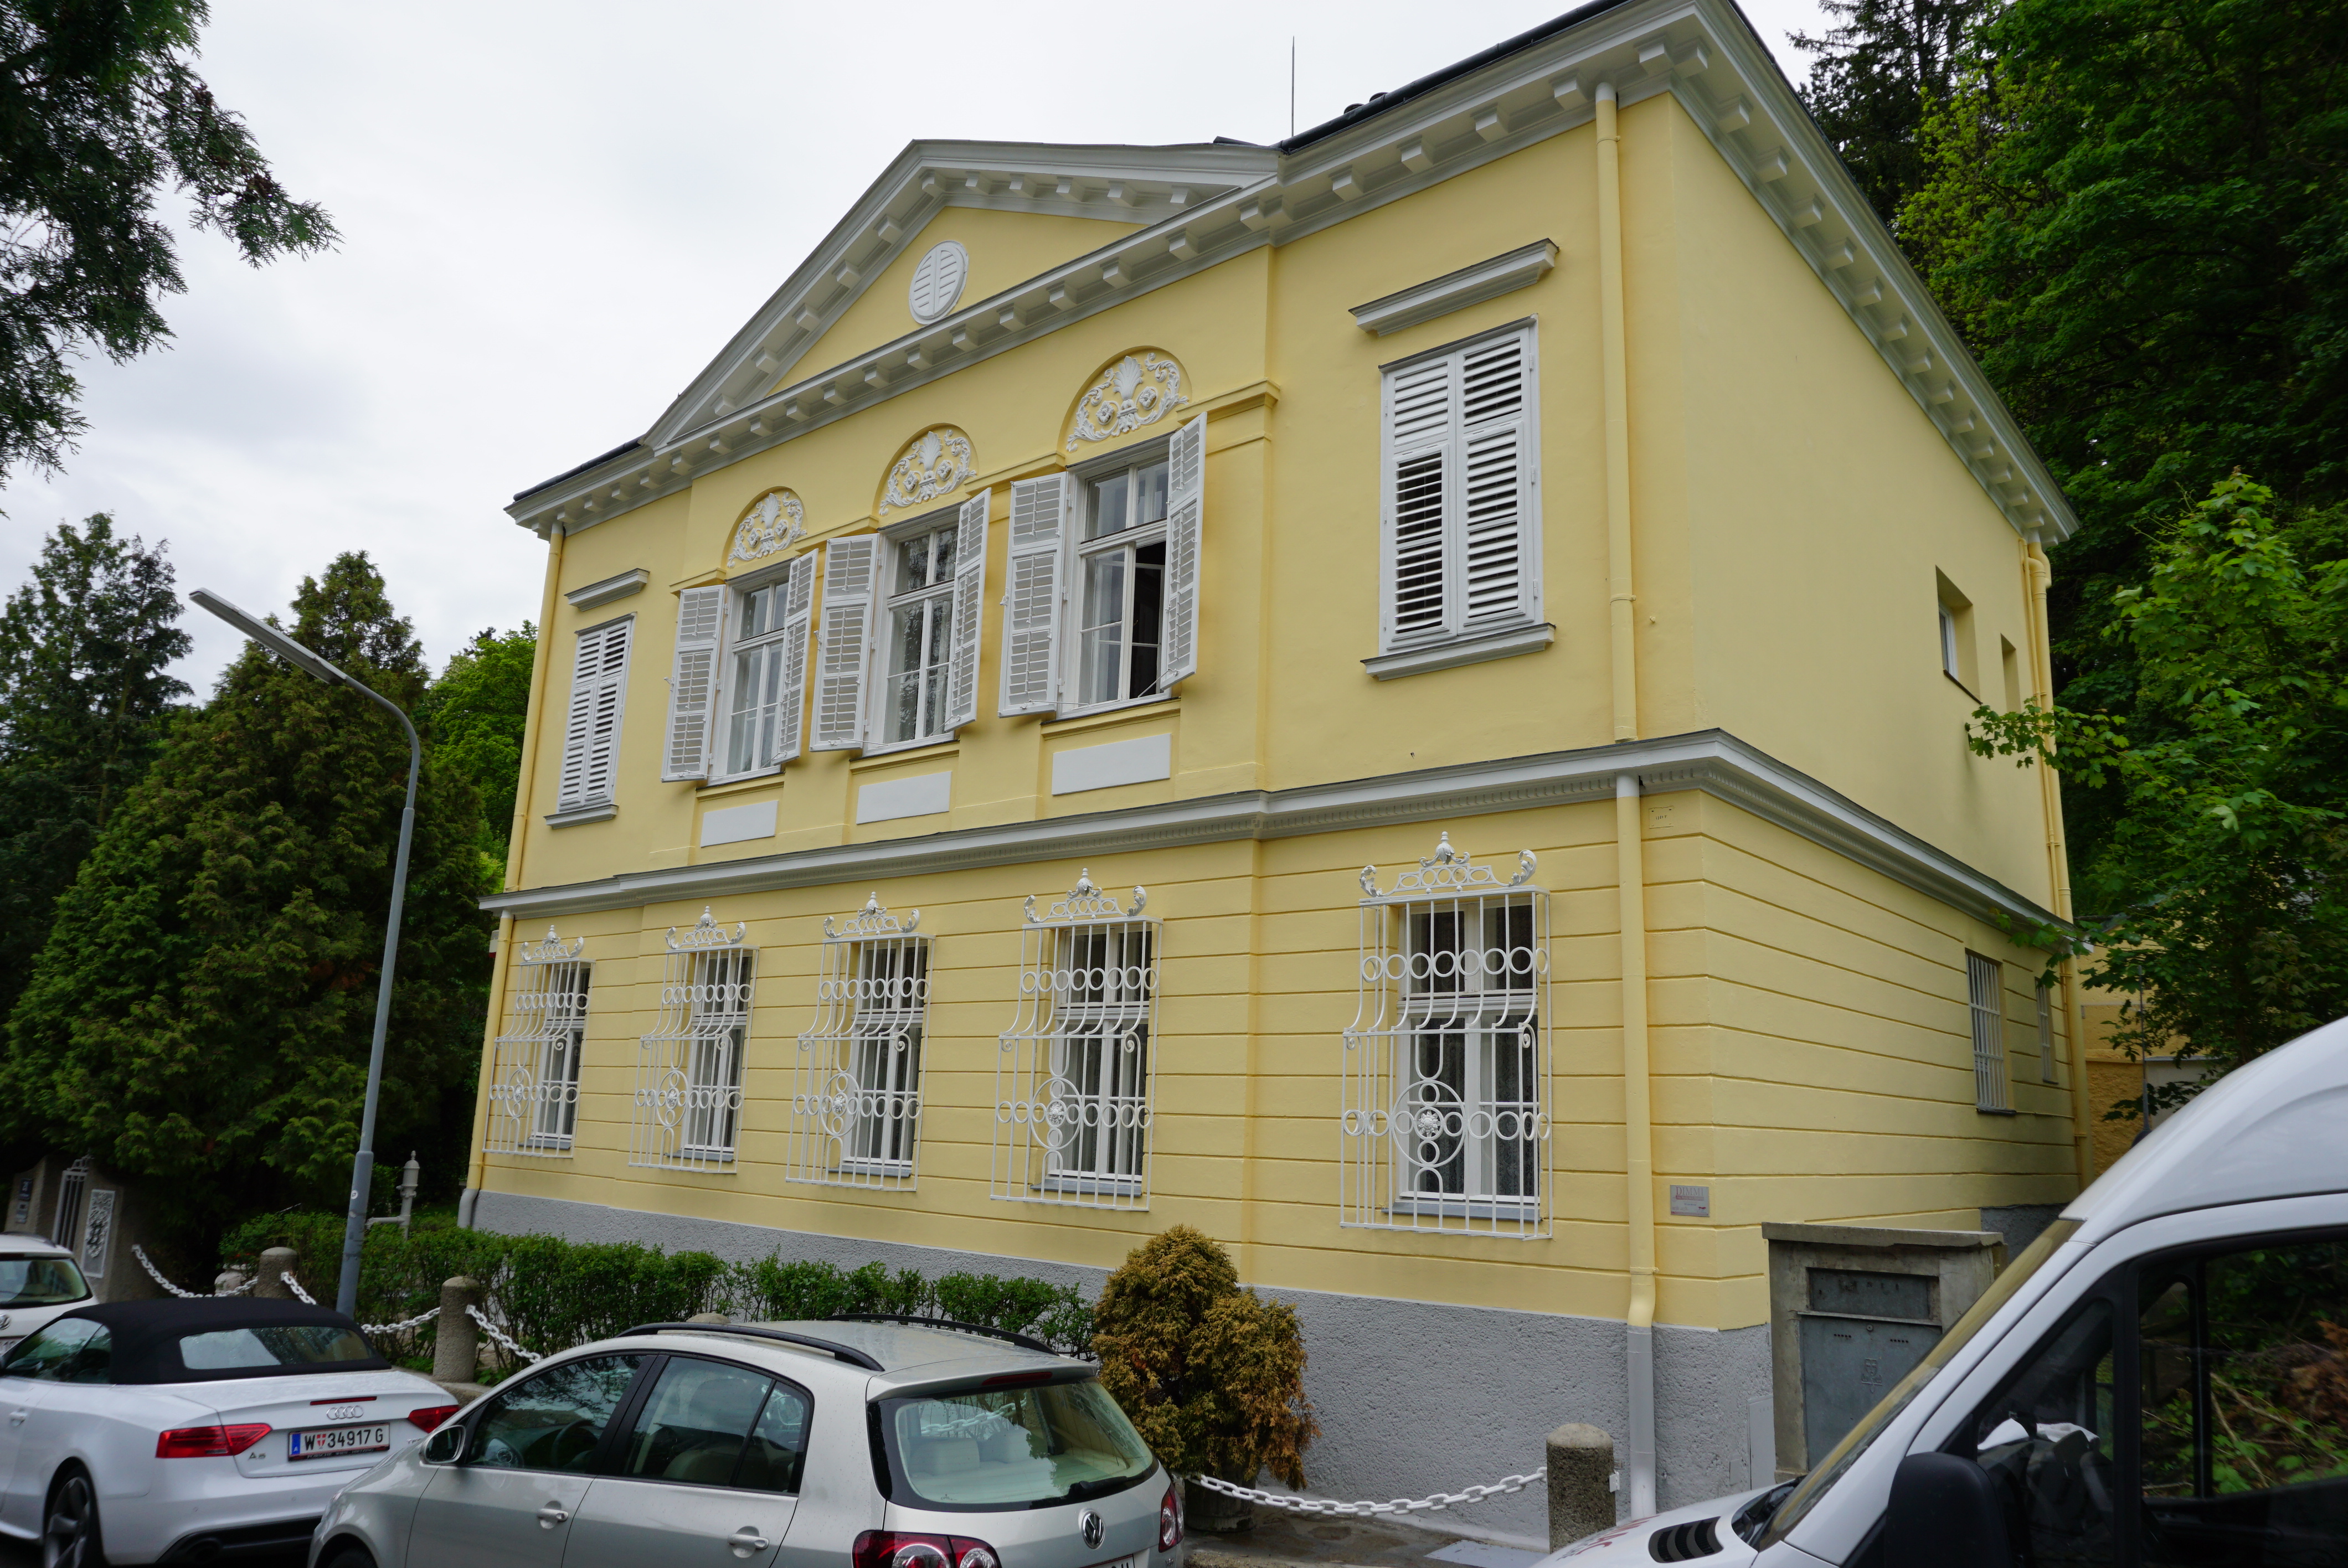 Außenansicht eines zweistöckigen, hellgelb gestrichenen Stadthauses mit weißen Fenstern und Fensterläden